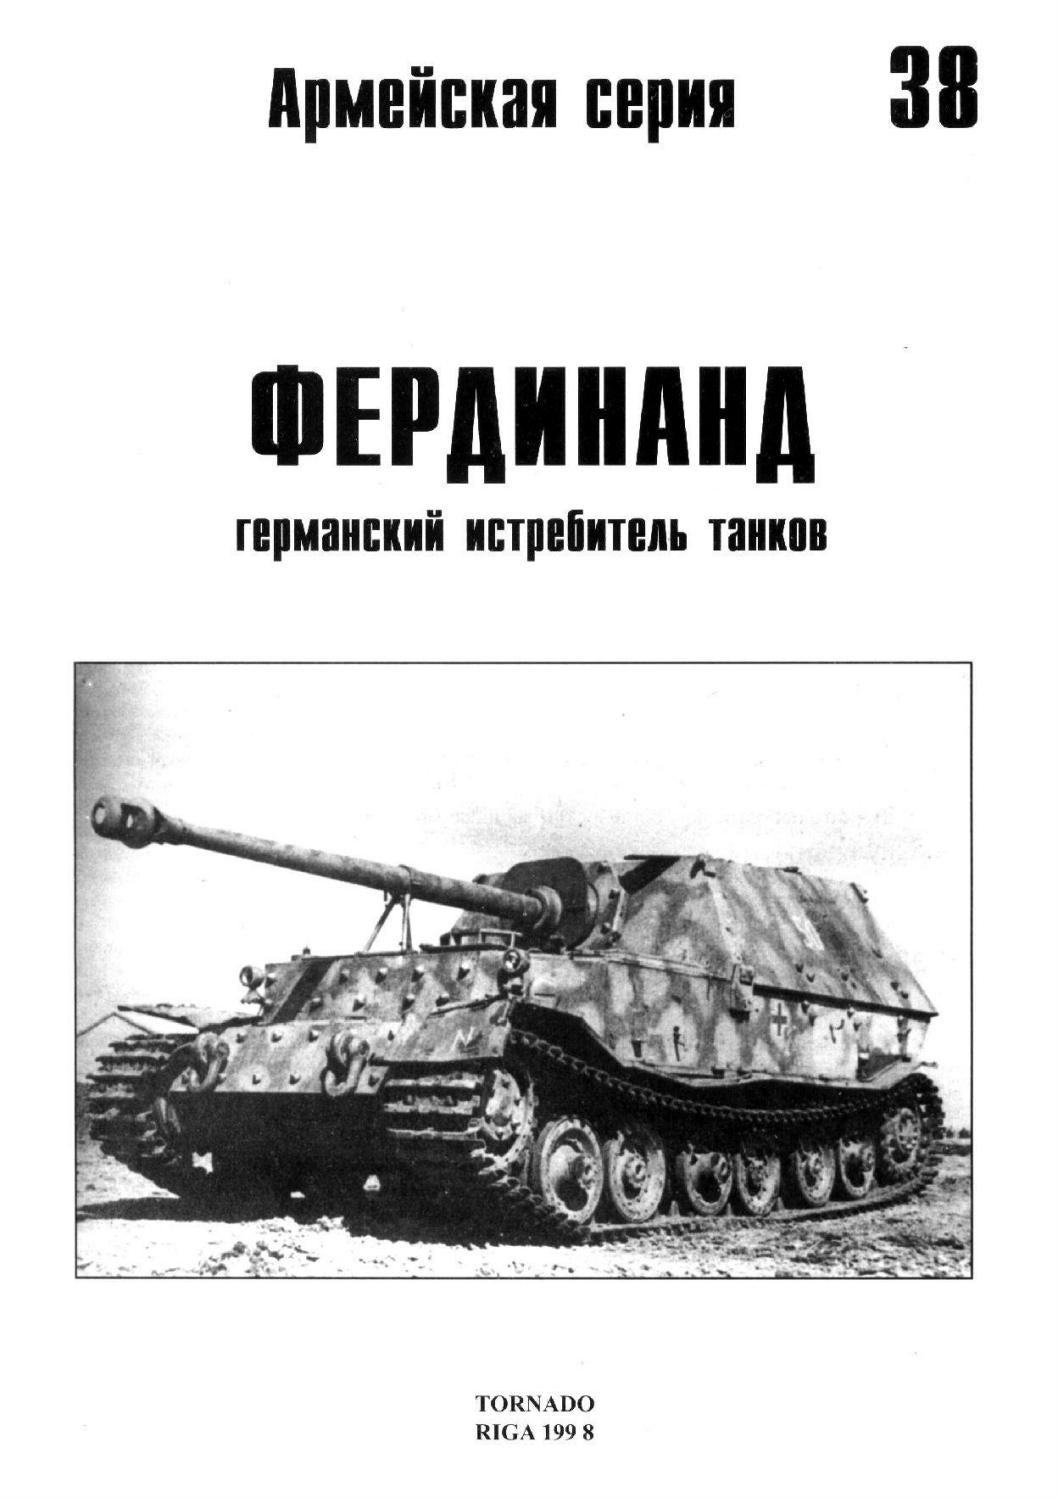 Tornado Армейская серия Фердинанд Германский истребитель танков, Выпуск 38, 1998